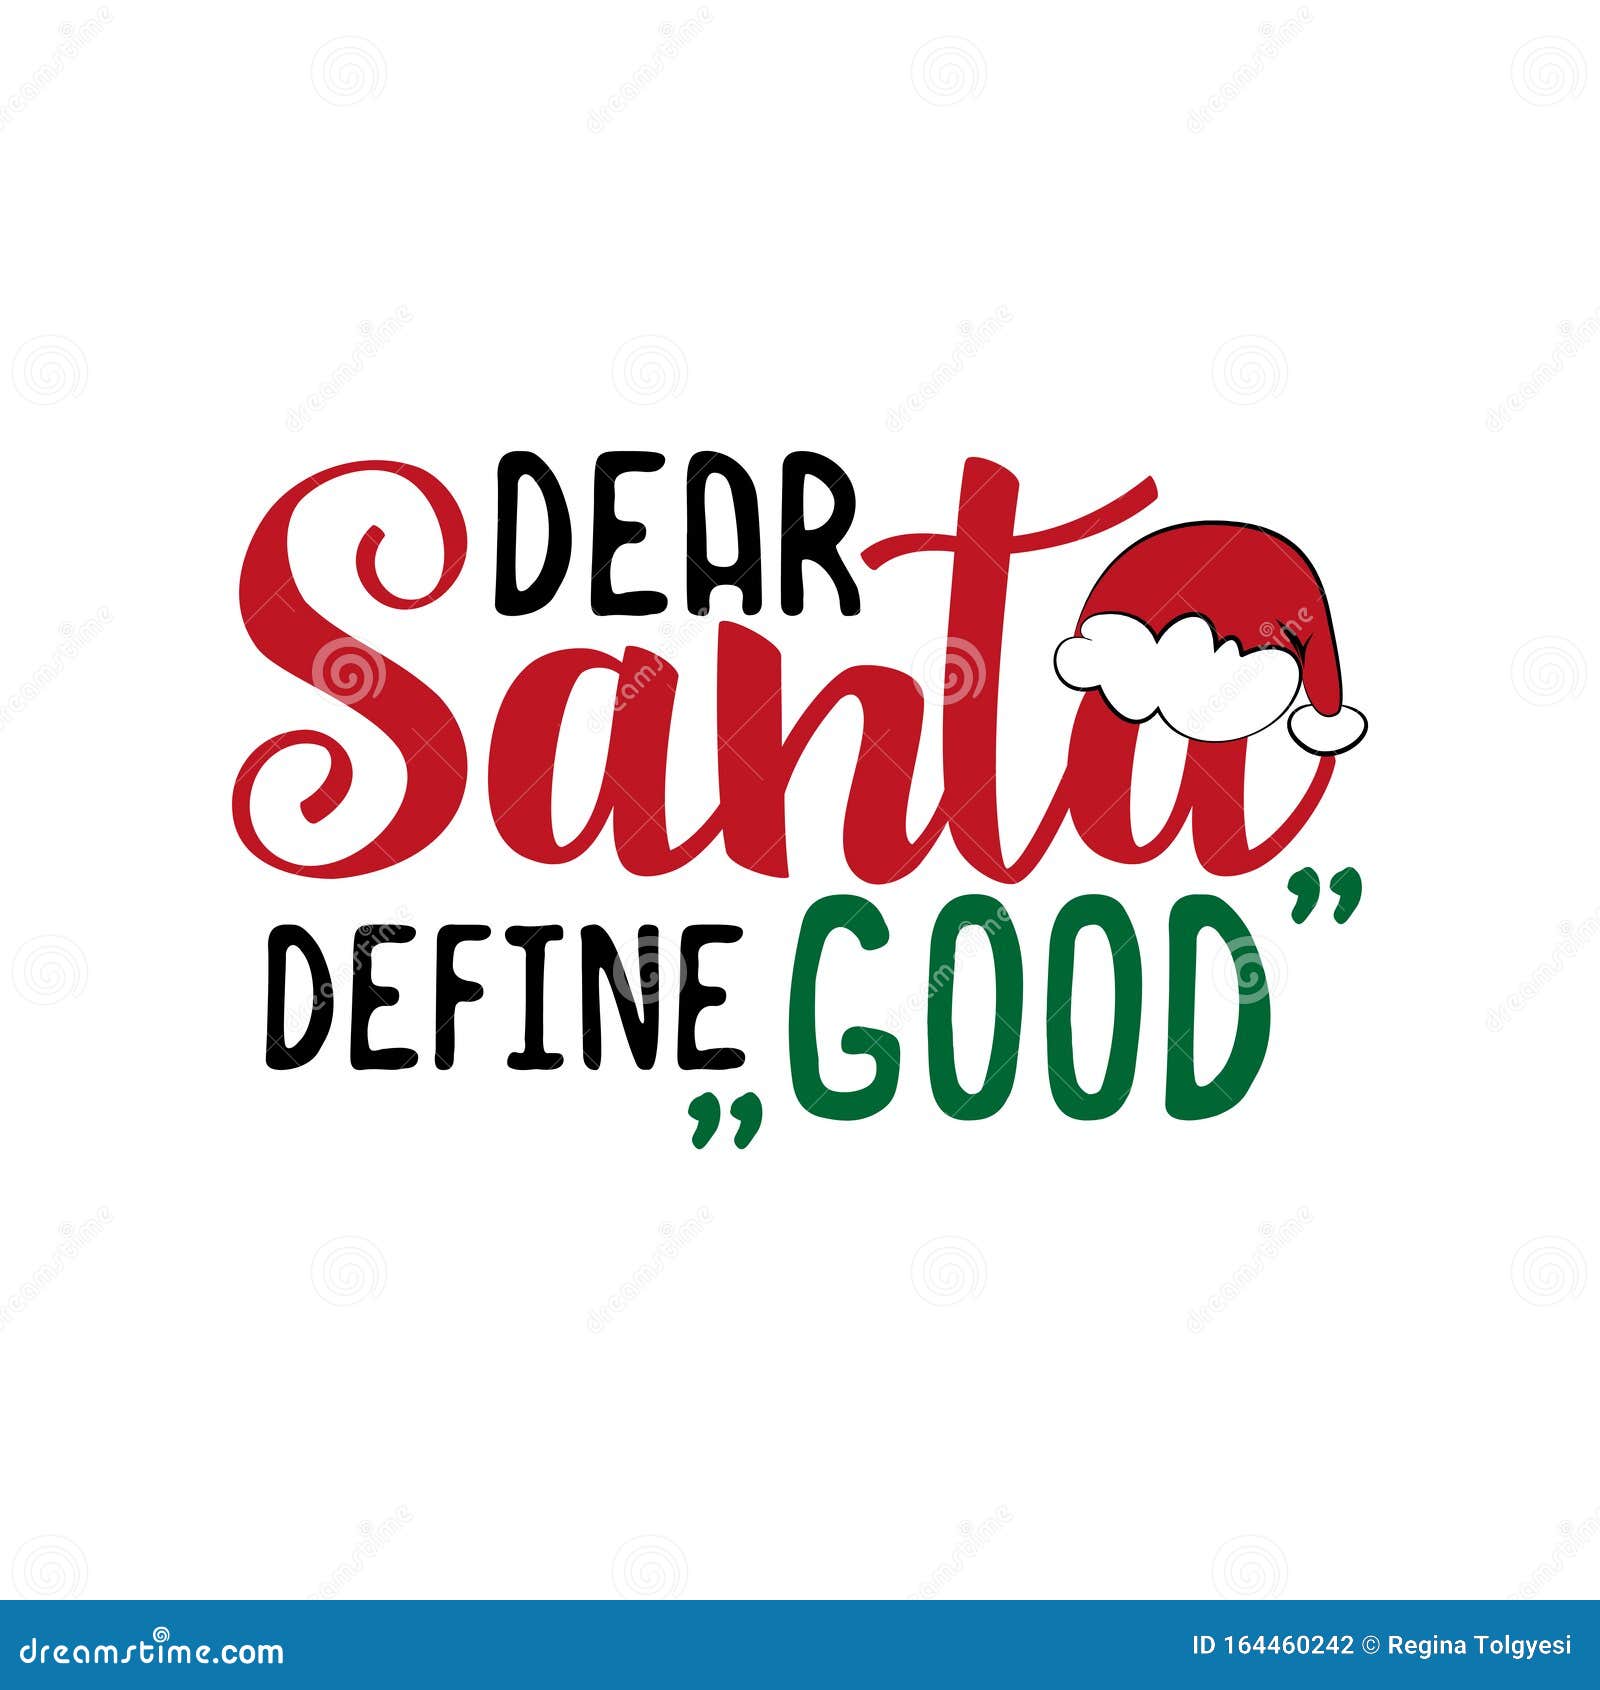 dear santa define good- funnxy christmas text.